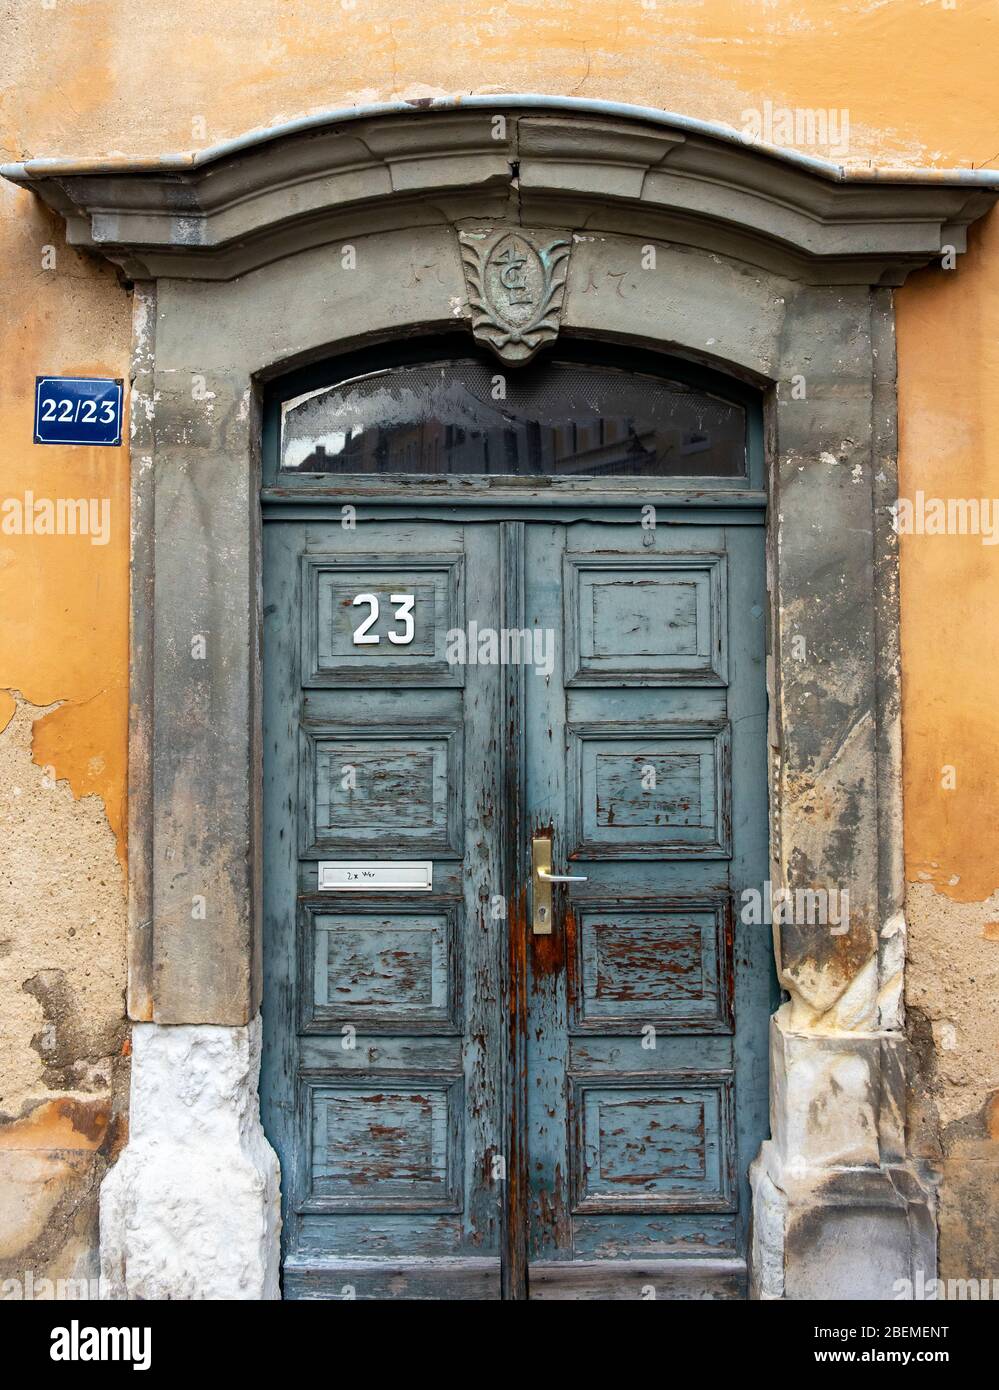 Old door, Görlitz (Goerlitz), Germany Stock Photo